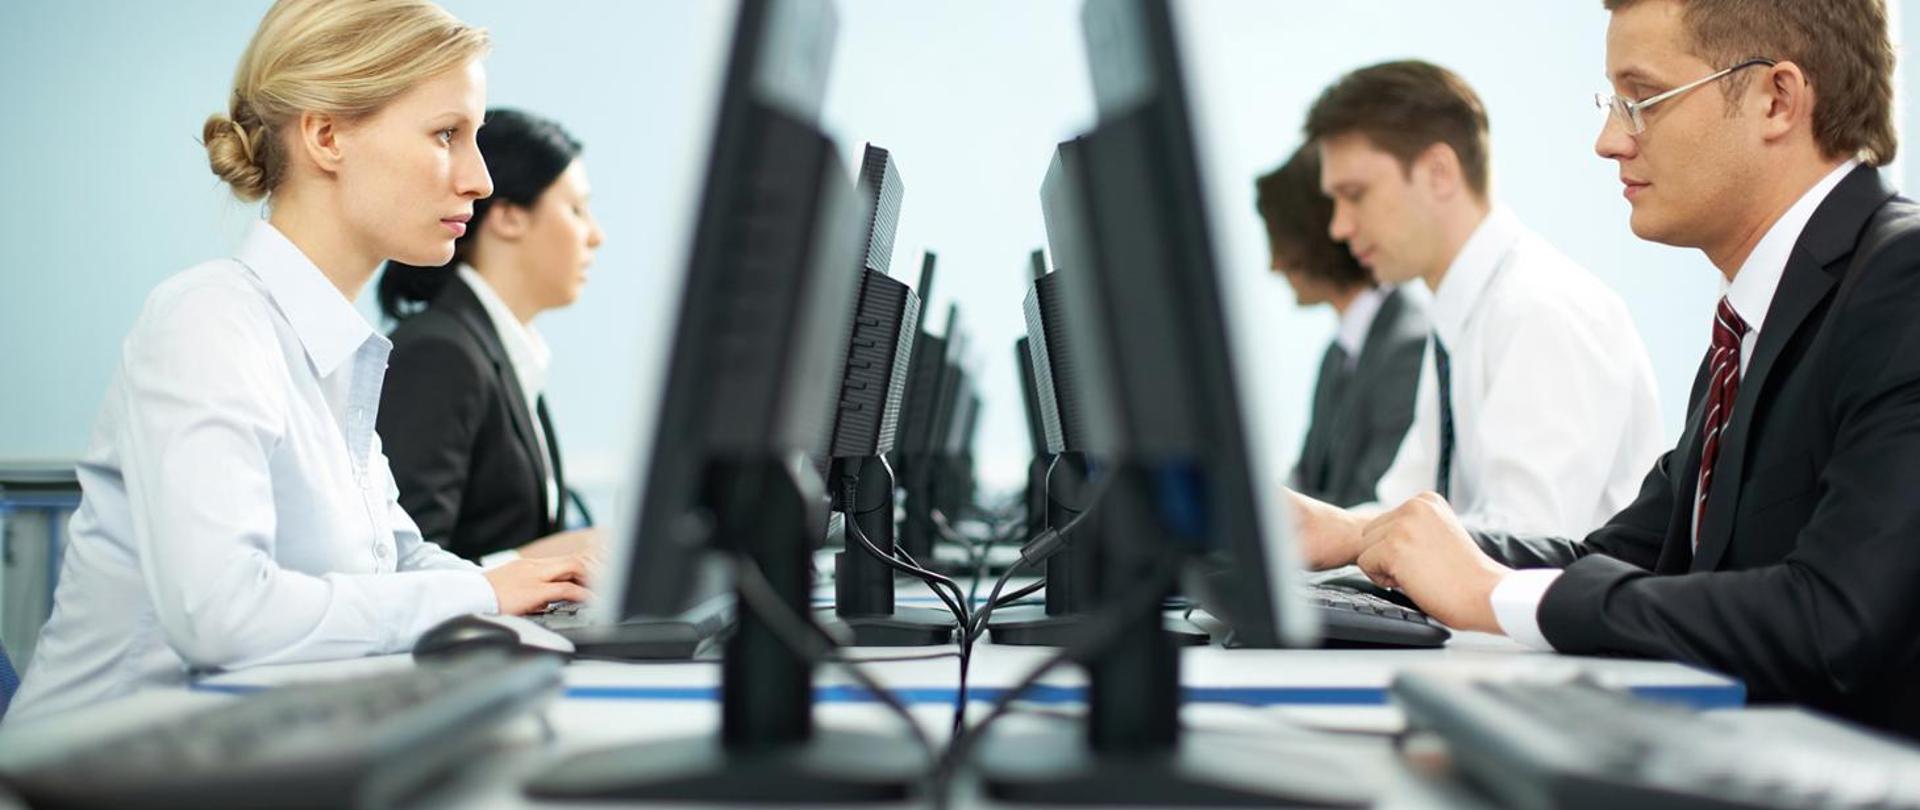 zdjęcie przedstawia pięć osób pracujących przy komputerach